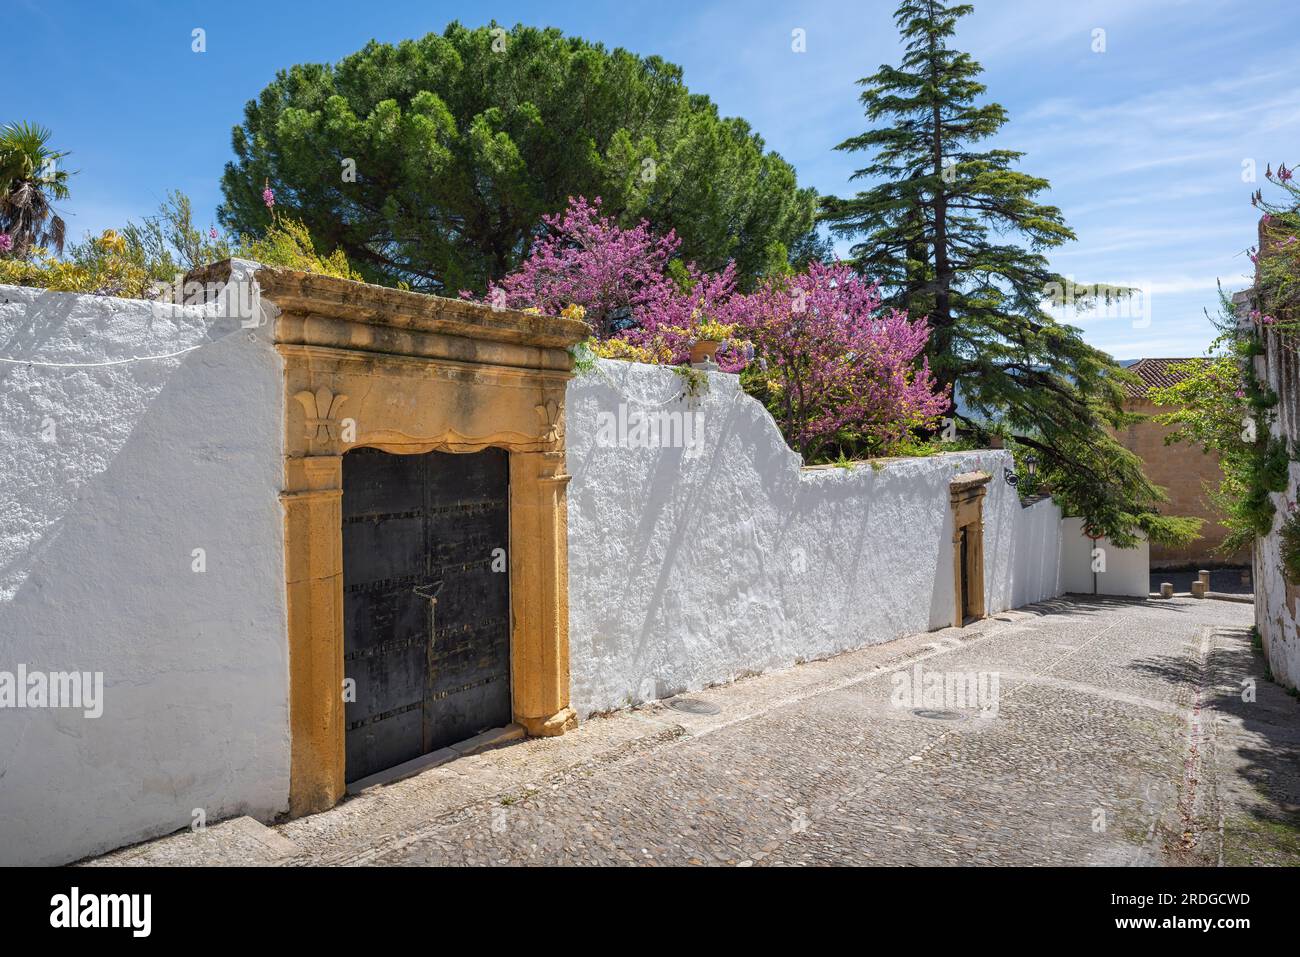 Eingang Casa del Rey Moro (Haus des maurischen Königs) - Ronda, Andalusien, Spanien Stockfoto